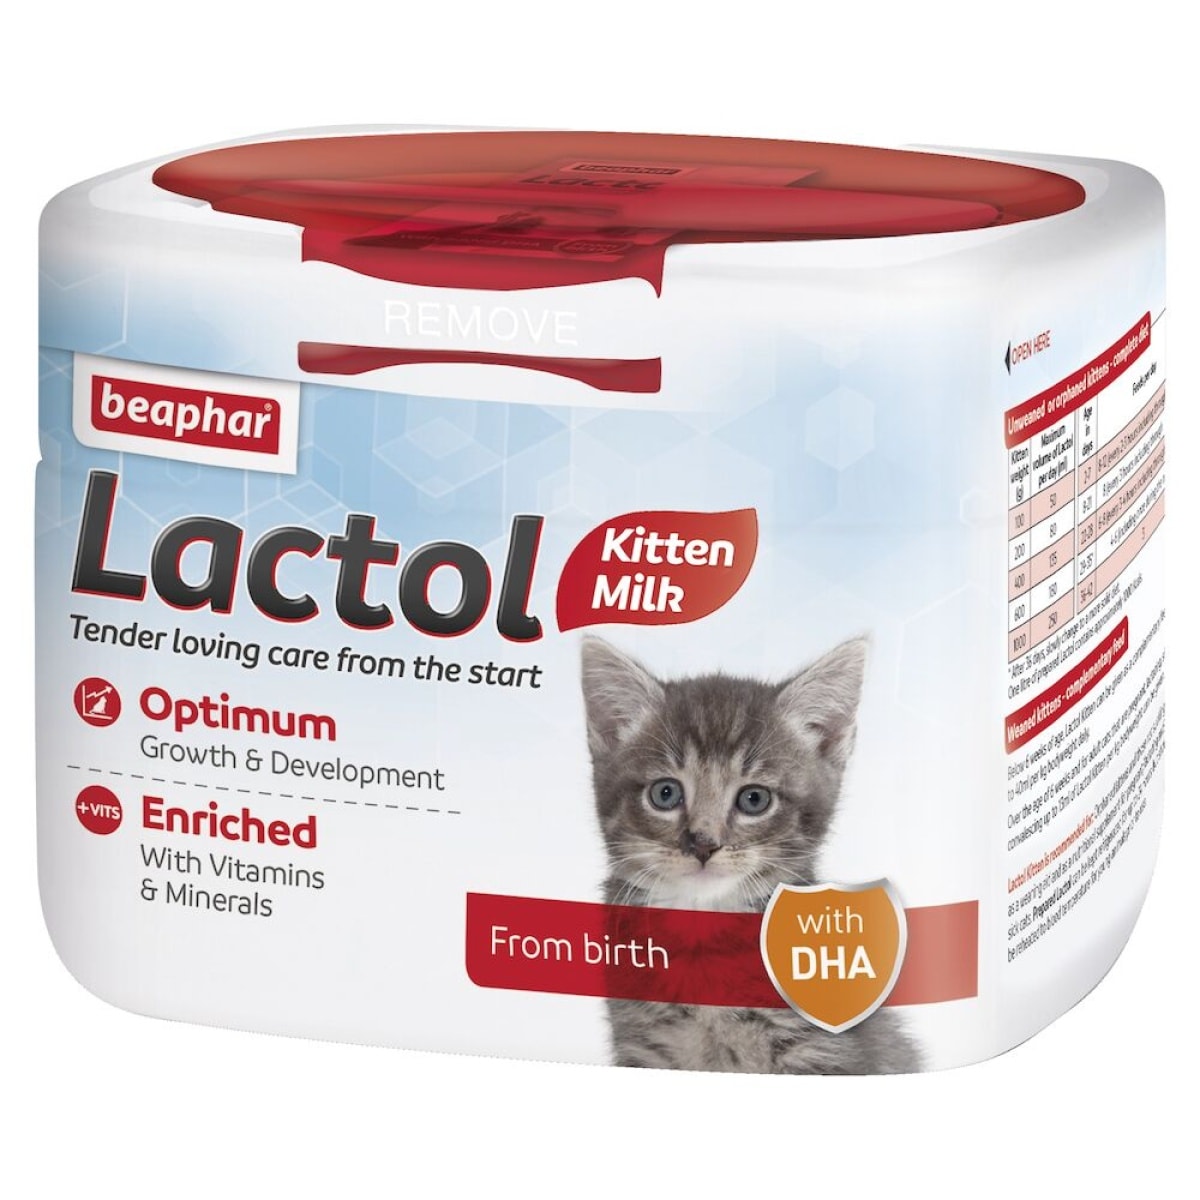 Beaphar Lactol Milk Replacer for Kittens – 250g Main Image